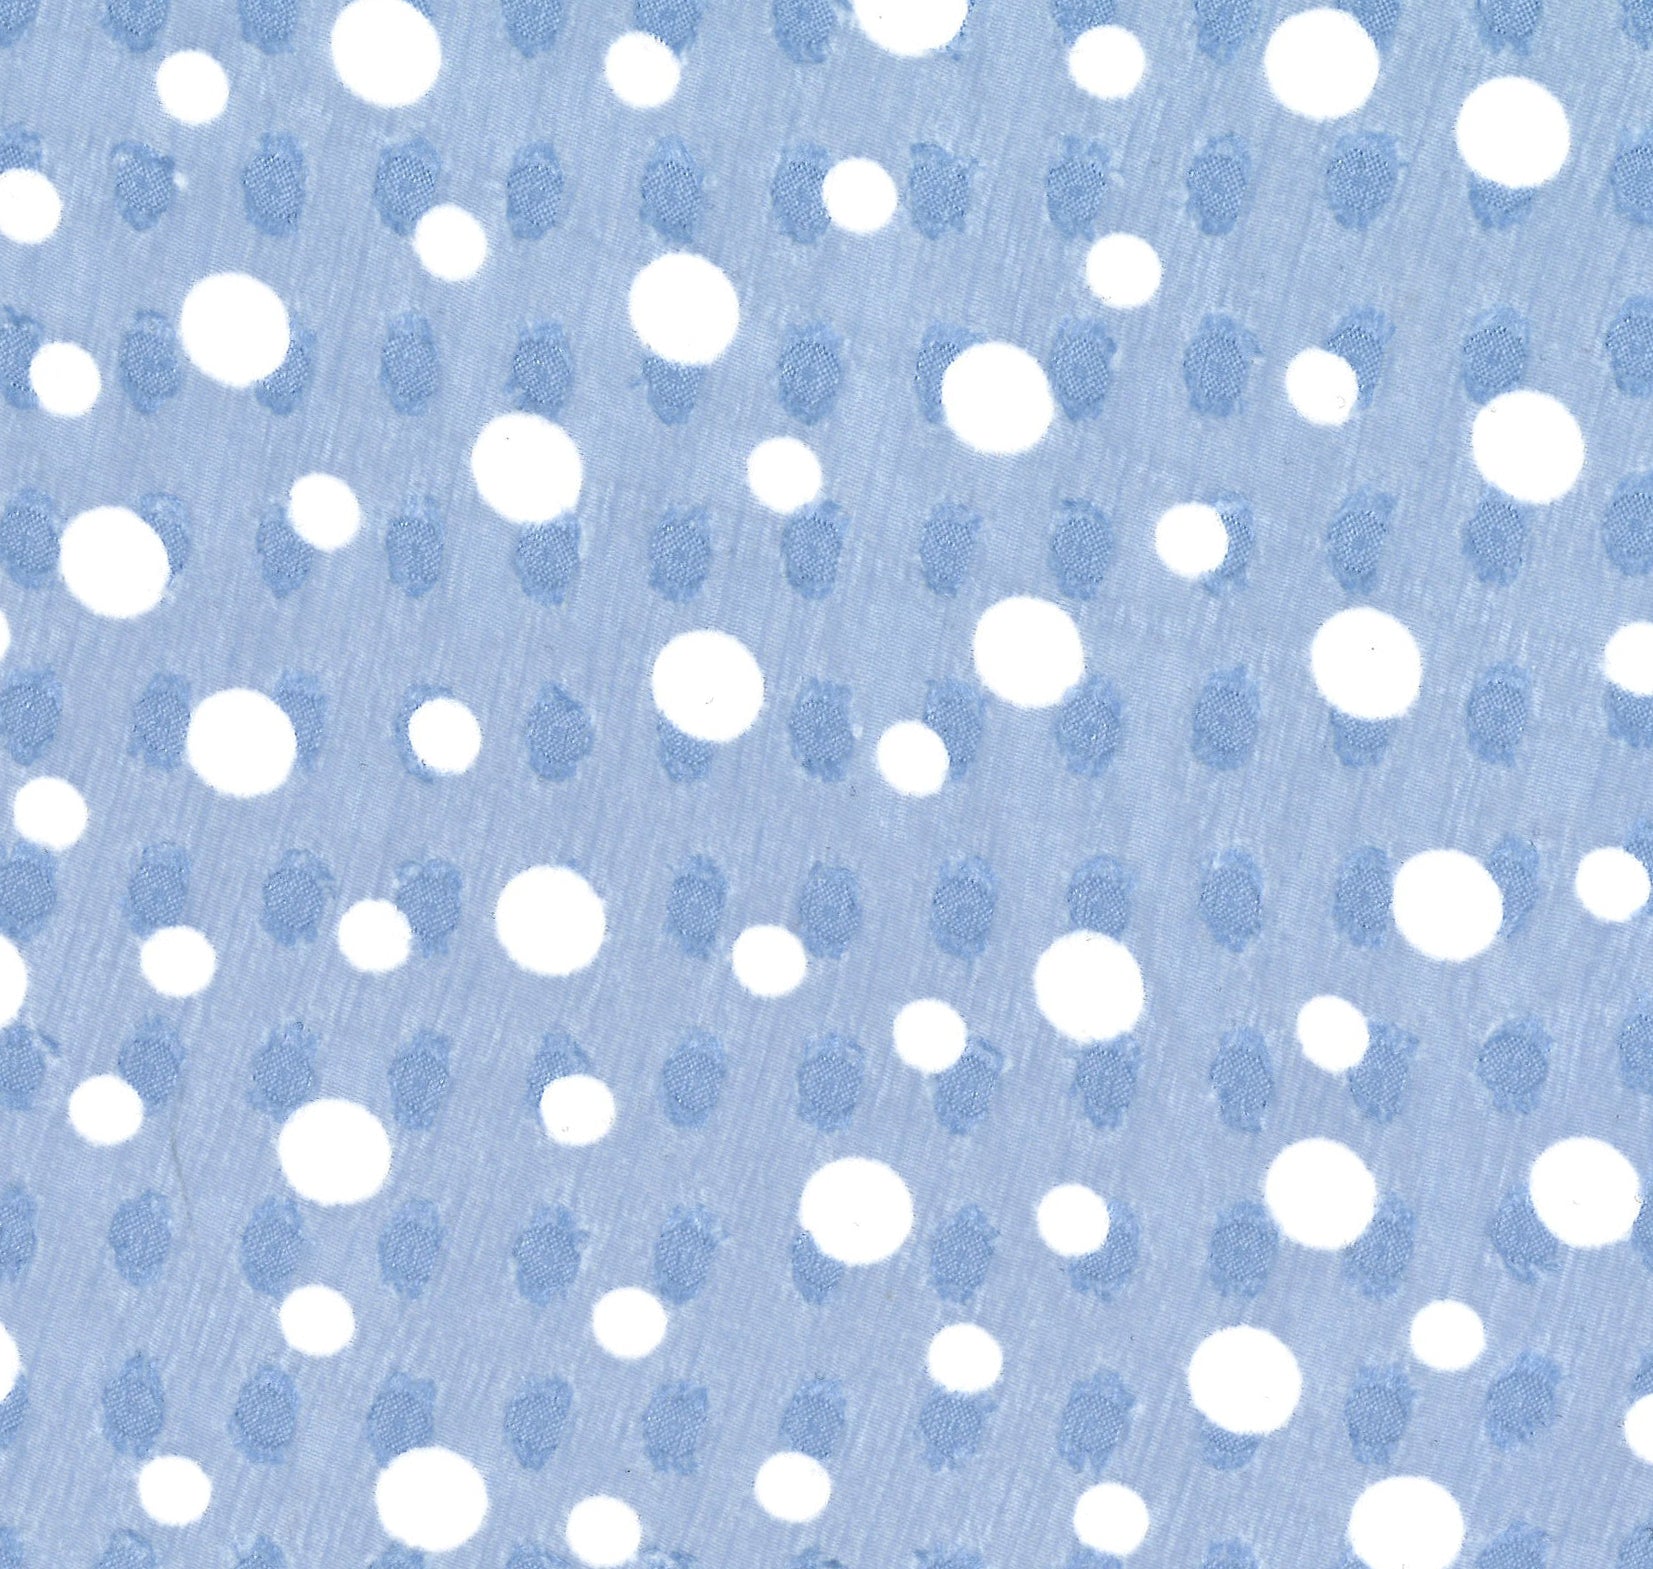 87027-01 Baby Blue Polyester Chiffon White Spot Jacquard Print 100% blue chiffon jacquard polyester print spots woven Jacquard, Chiffon, Print - knit fabric - woven fabric - fabric company - fabric wholesale - fabric b2b - fabric factory - high quality fabric - hong kong fabric - fabric hk - acetate fabric - cotton fabric - linen fabric - metallic fabric - nylon fabric - polyester fabric - spandex fabric - chun wing hing - cwh hk - fabric worldwide ship - 針織布 - 梳織布 - 布料公司- 布料批發 - 香港布料 - 秦榮興